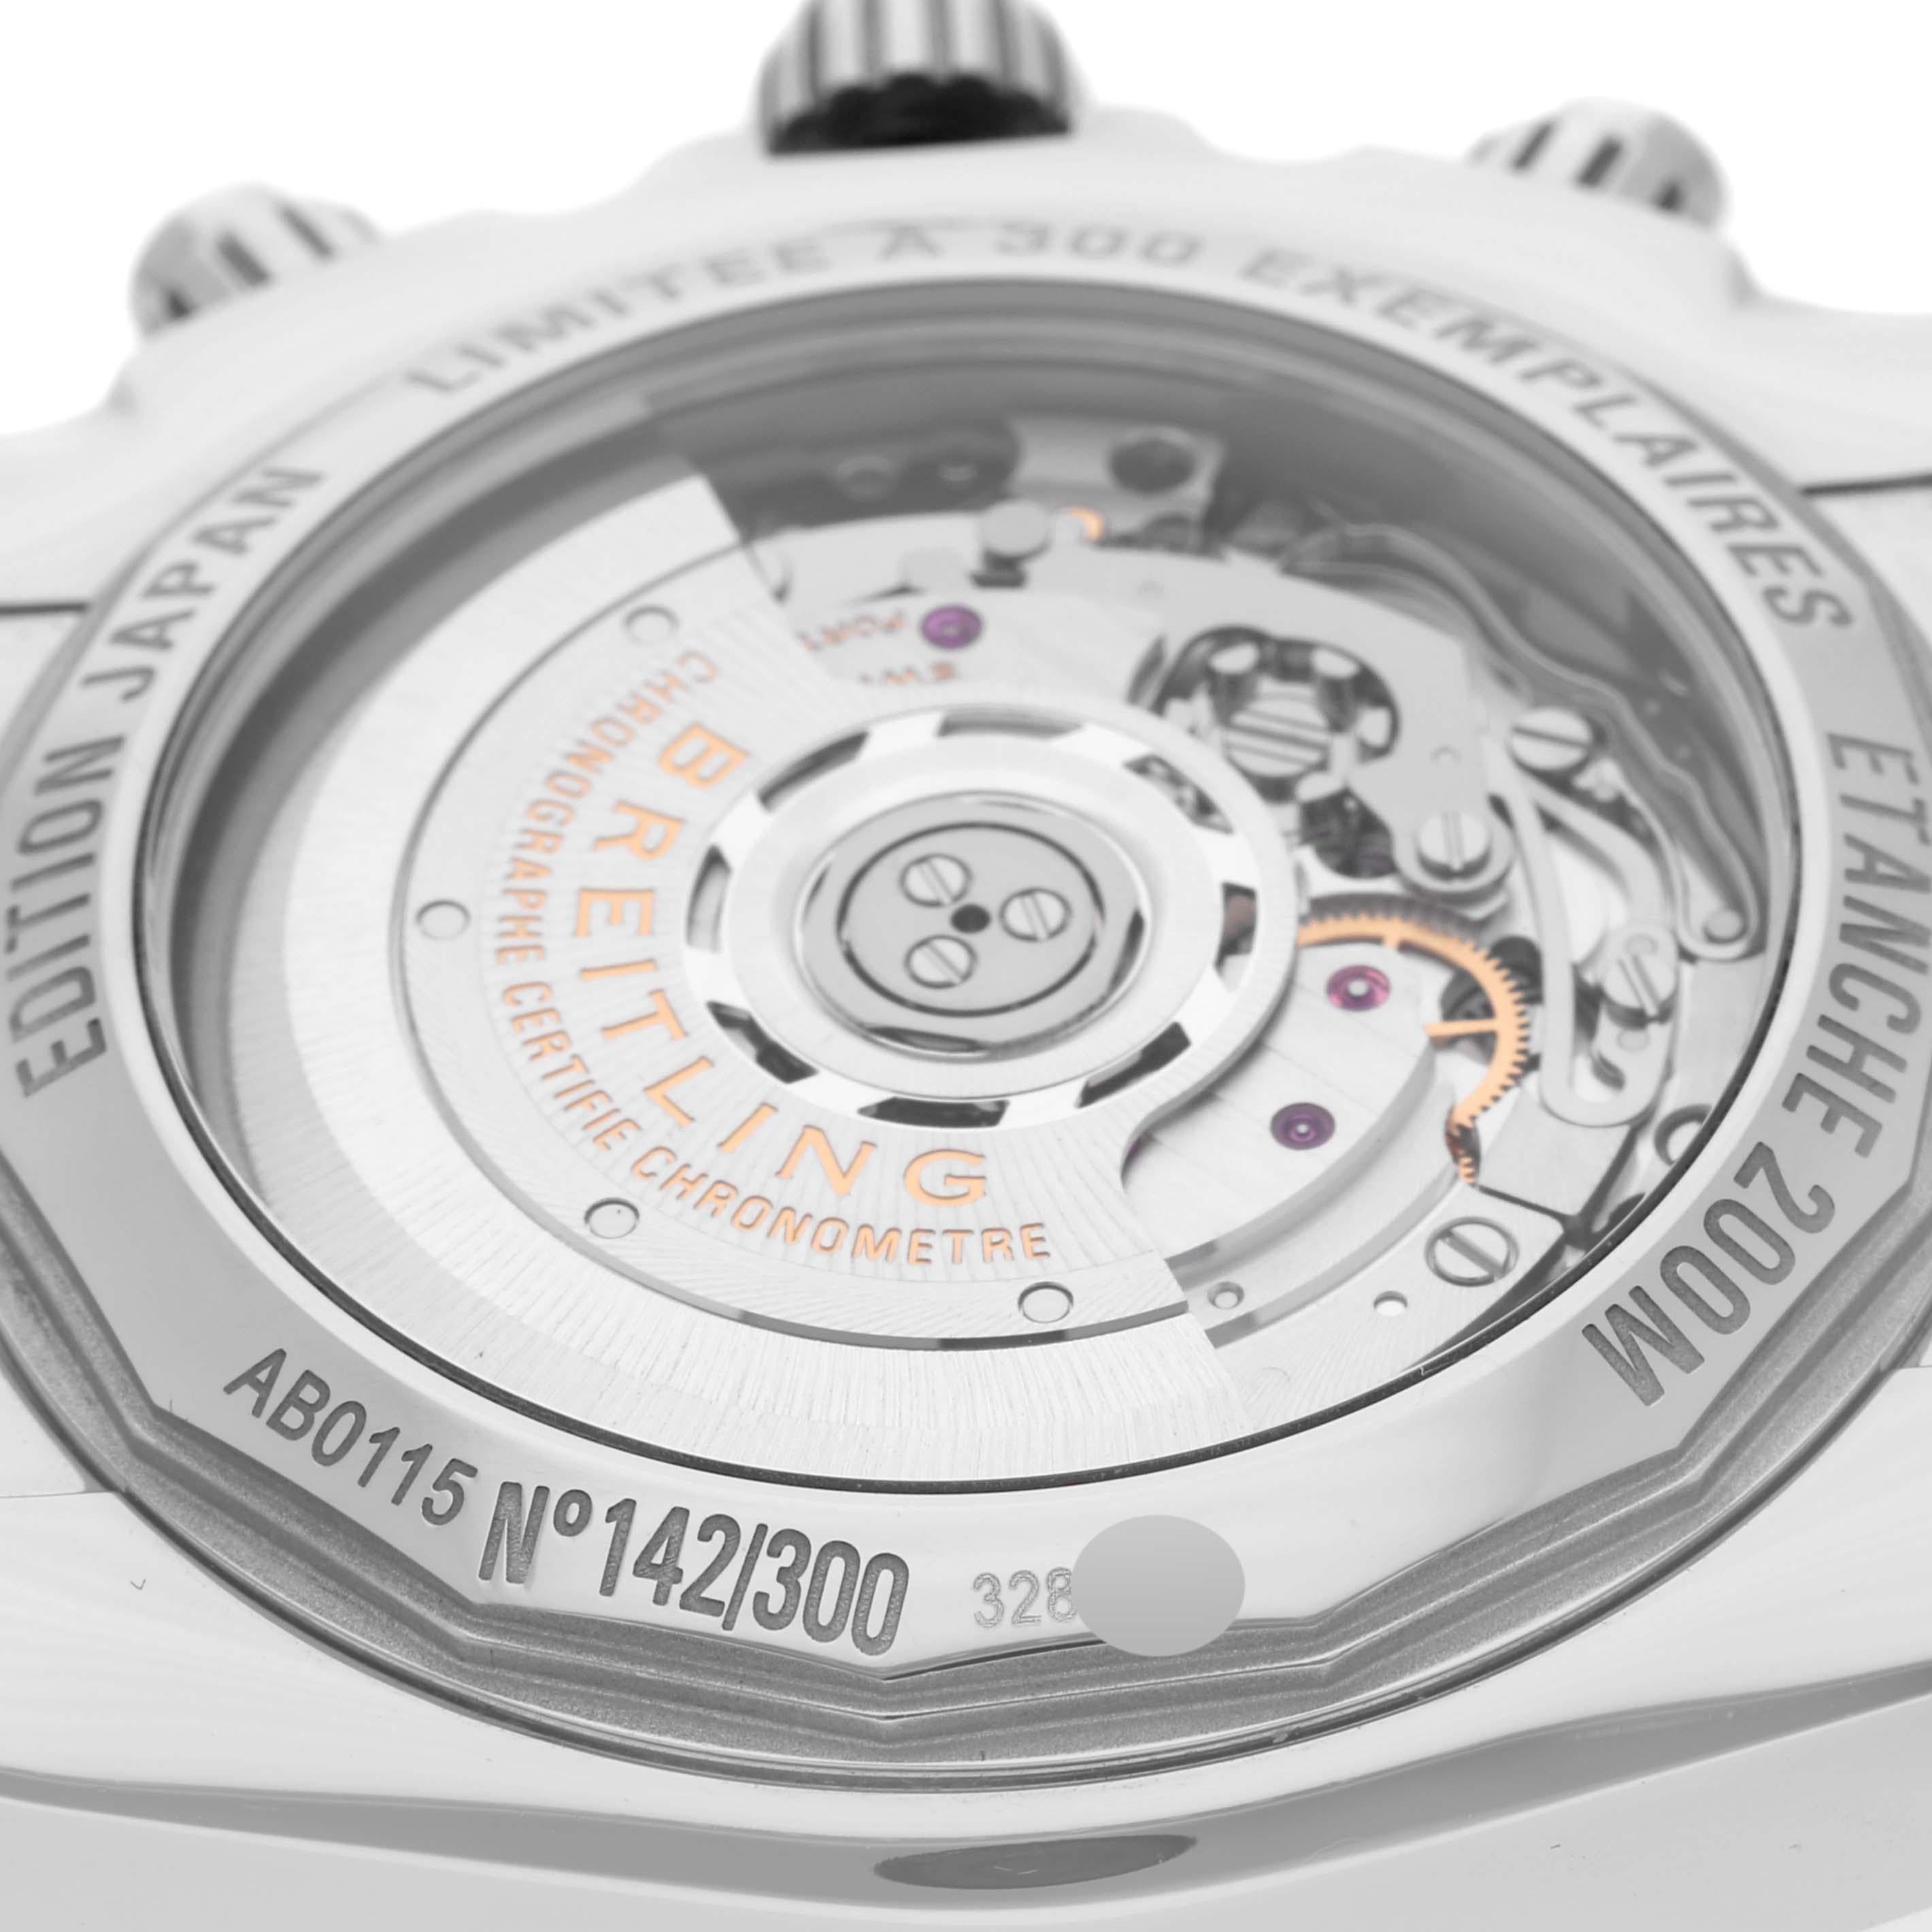 Breitling Chronomat 44 Mother of Pearl Dial Japan Limited Edition Steel Mens Watch AB0115 Box Card. Mouvement automatique à remontage automatique, officiellement certifié chronomètre. Fonction chronographe. Boîtier en acier inoxydable de 44.0 mm de